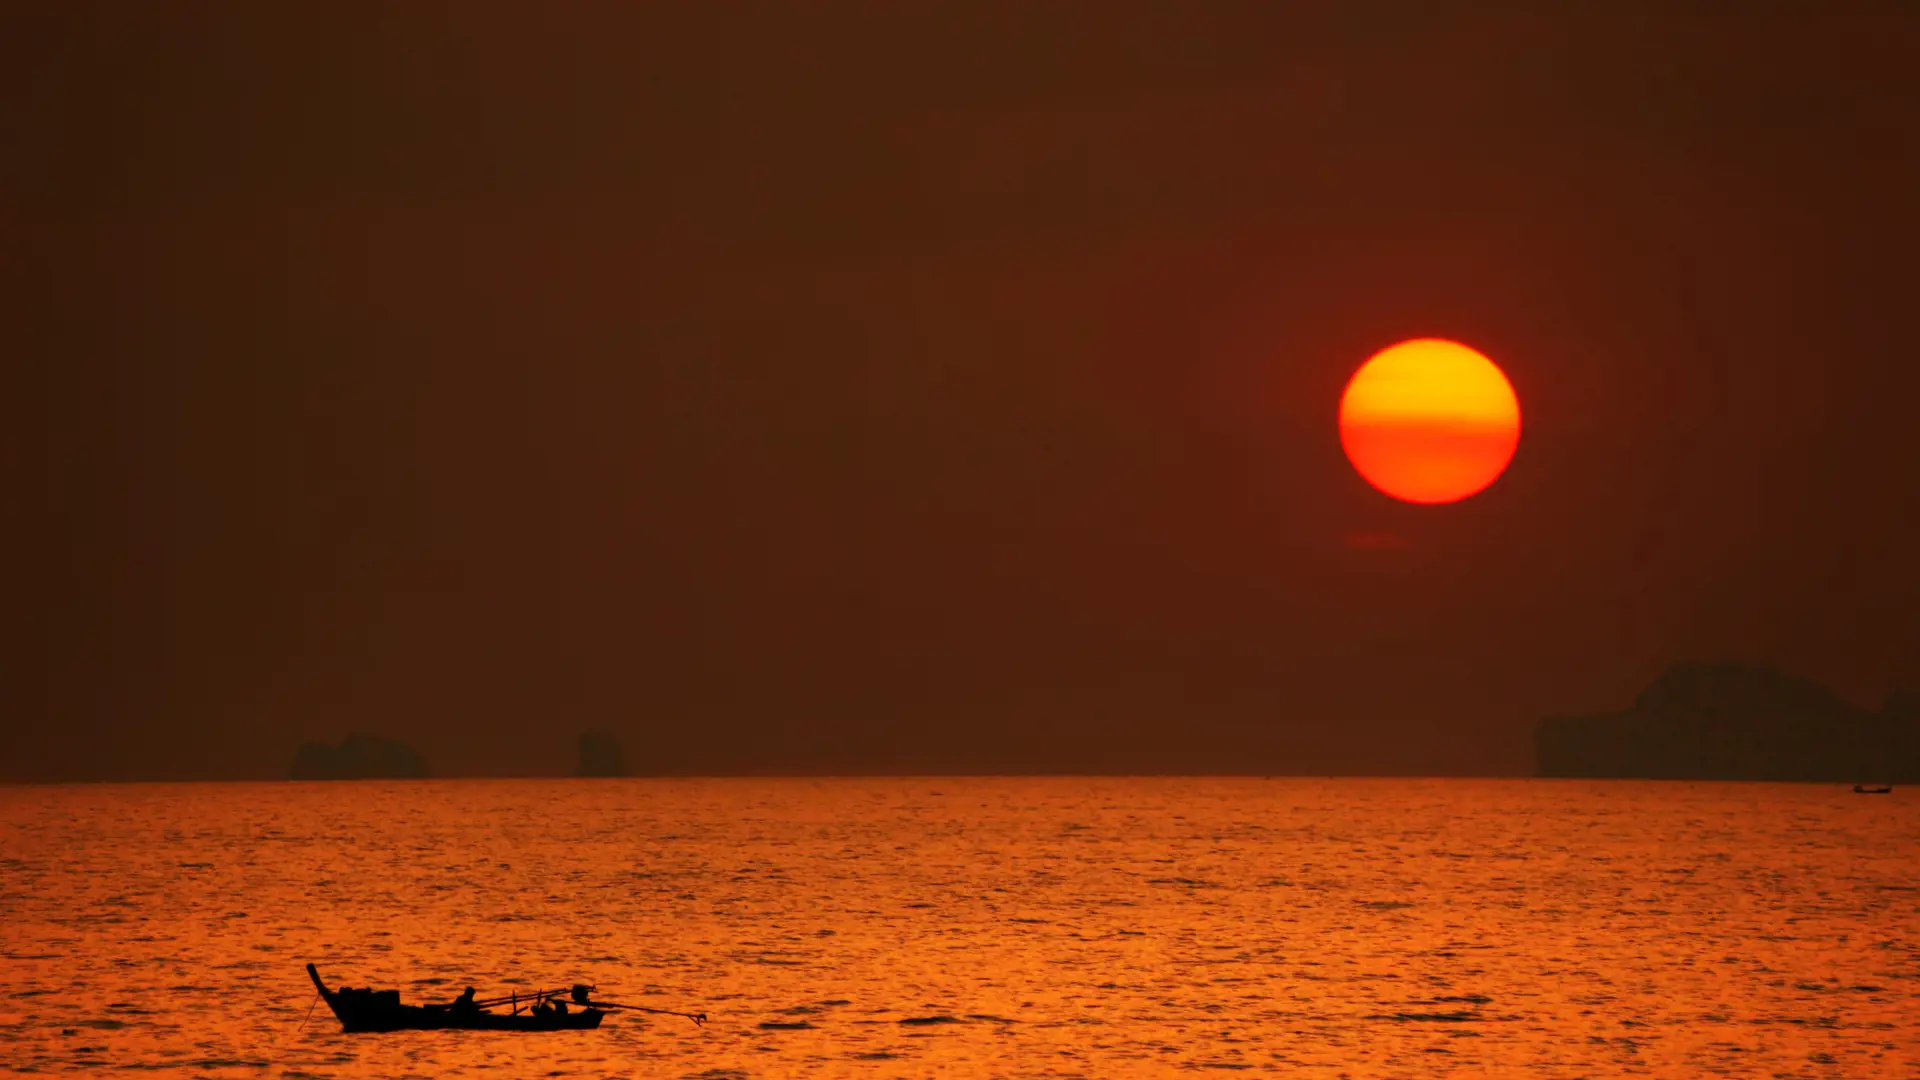 KOH LANTA - En fisker på arbejde, mens solen går ned over Koh Lanta, Check Point Travel